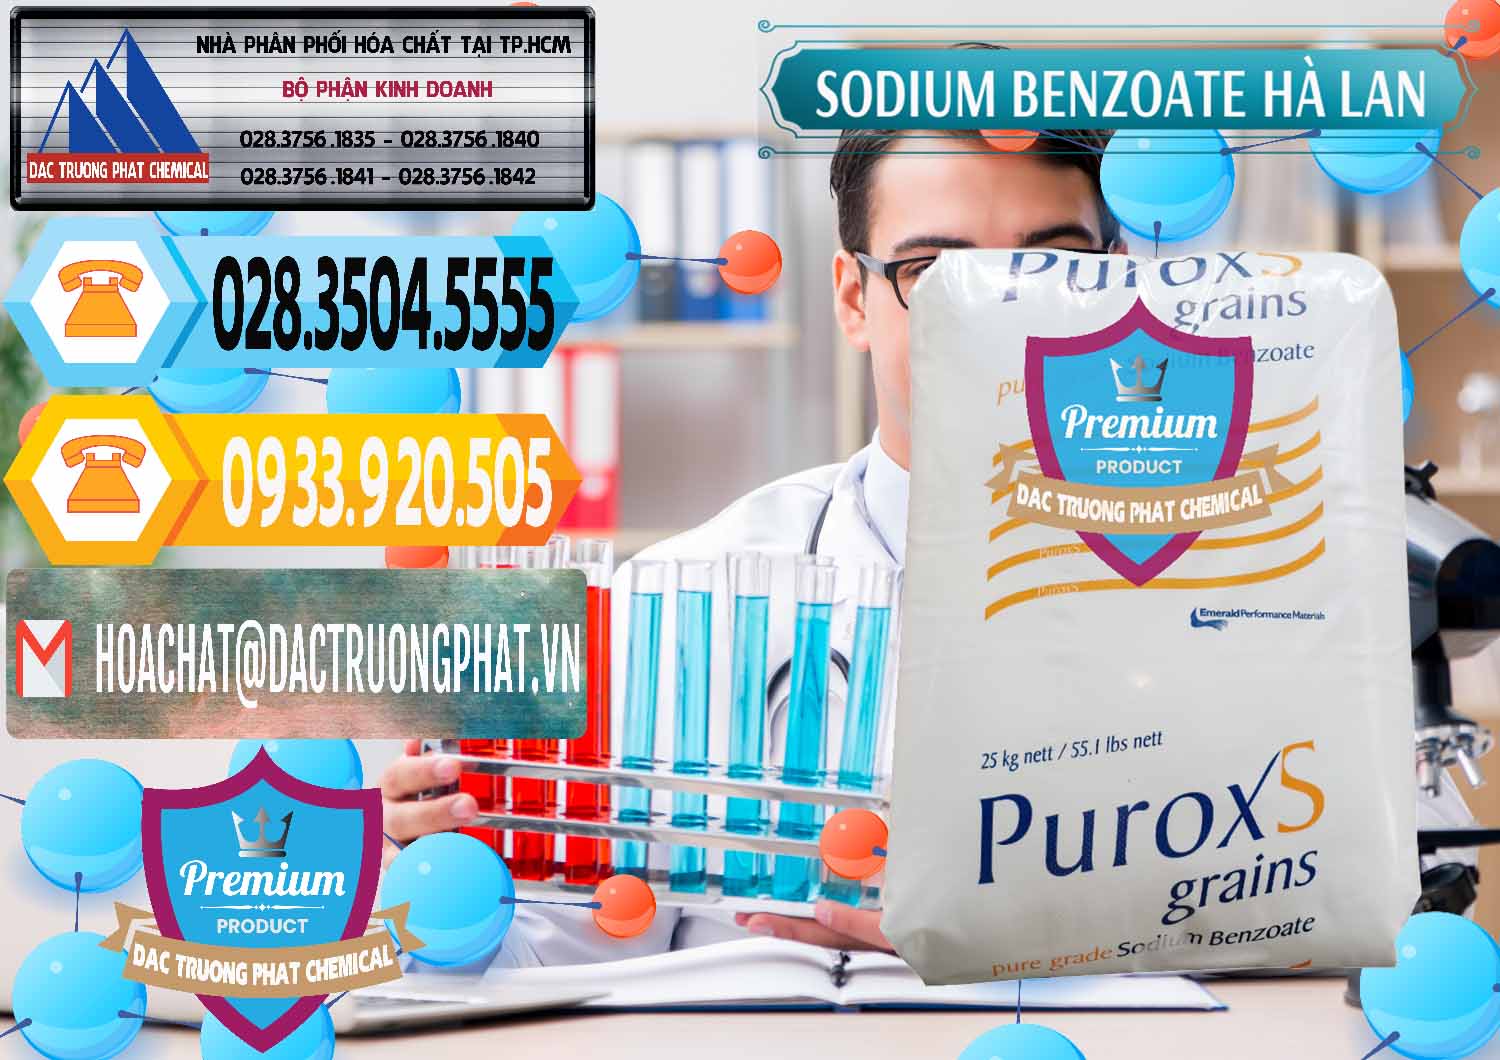 Chuyên bán ( phân phối ) Sodium Benzoate - Mốc Bột Puroxs Hà Lan Netherlands - 0467 - Công ty chuyên cung cấp và nhập khẩu hóa chất tại TP.HCM - hoachattayrua.net